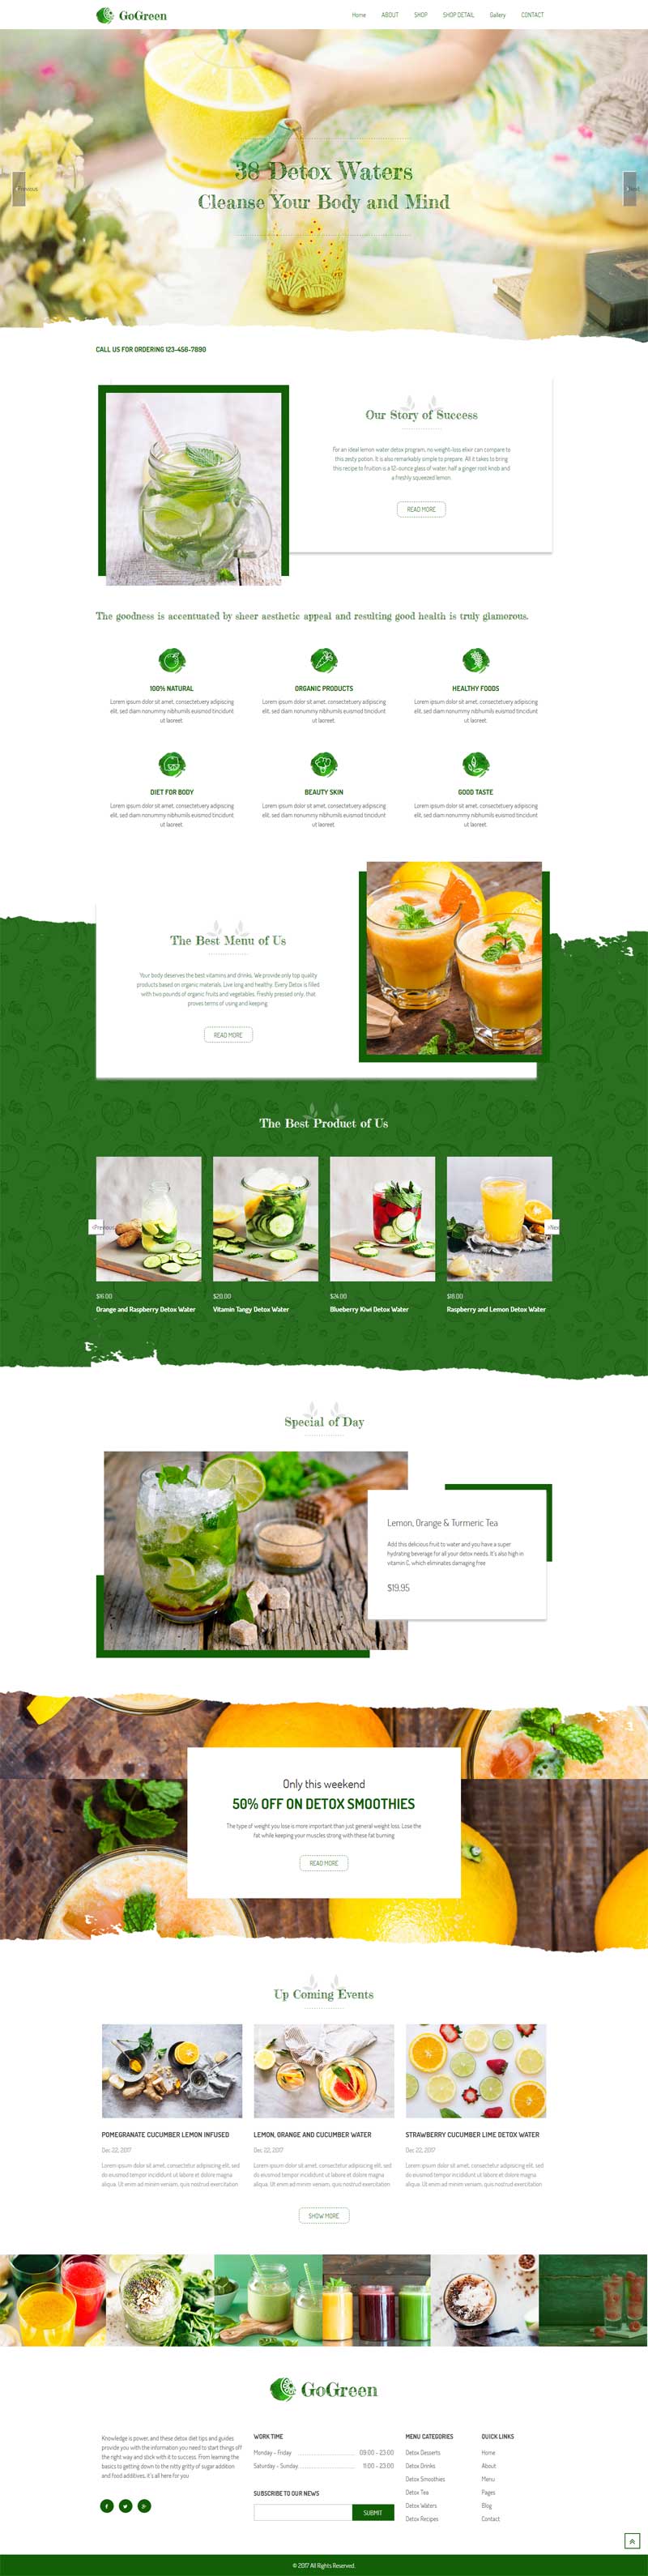 绿色的水果饮料店铺介绍网站模板html下载